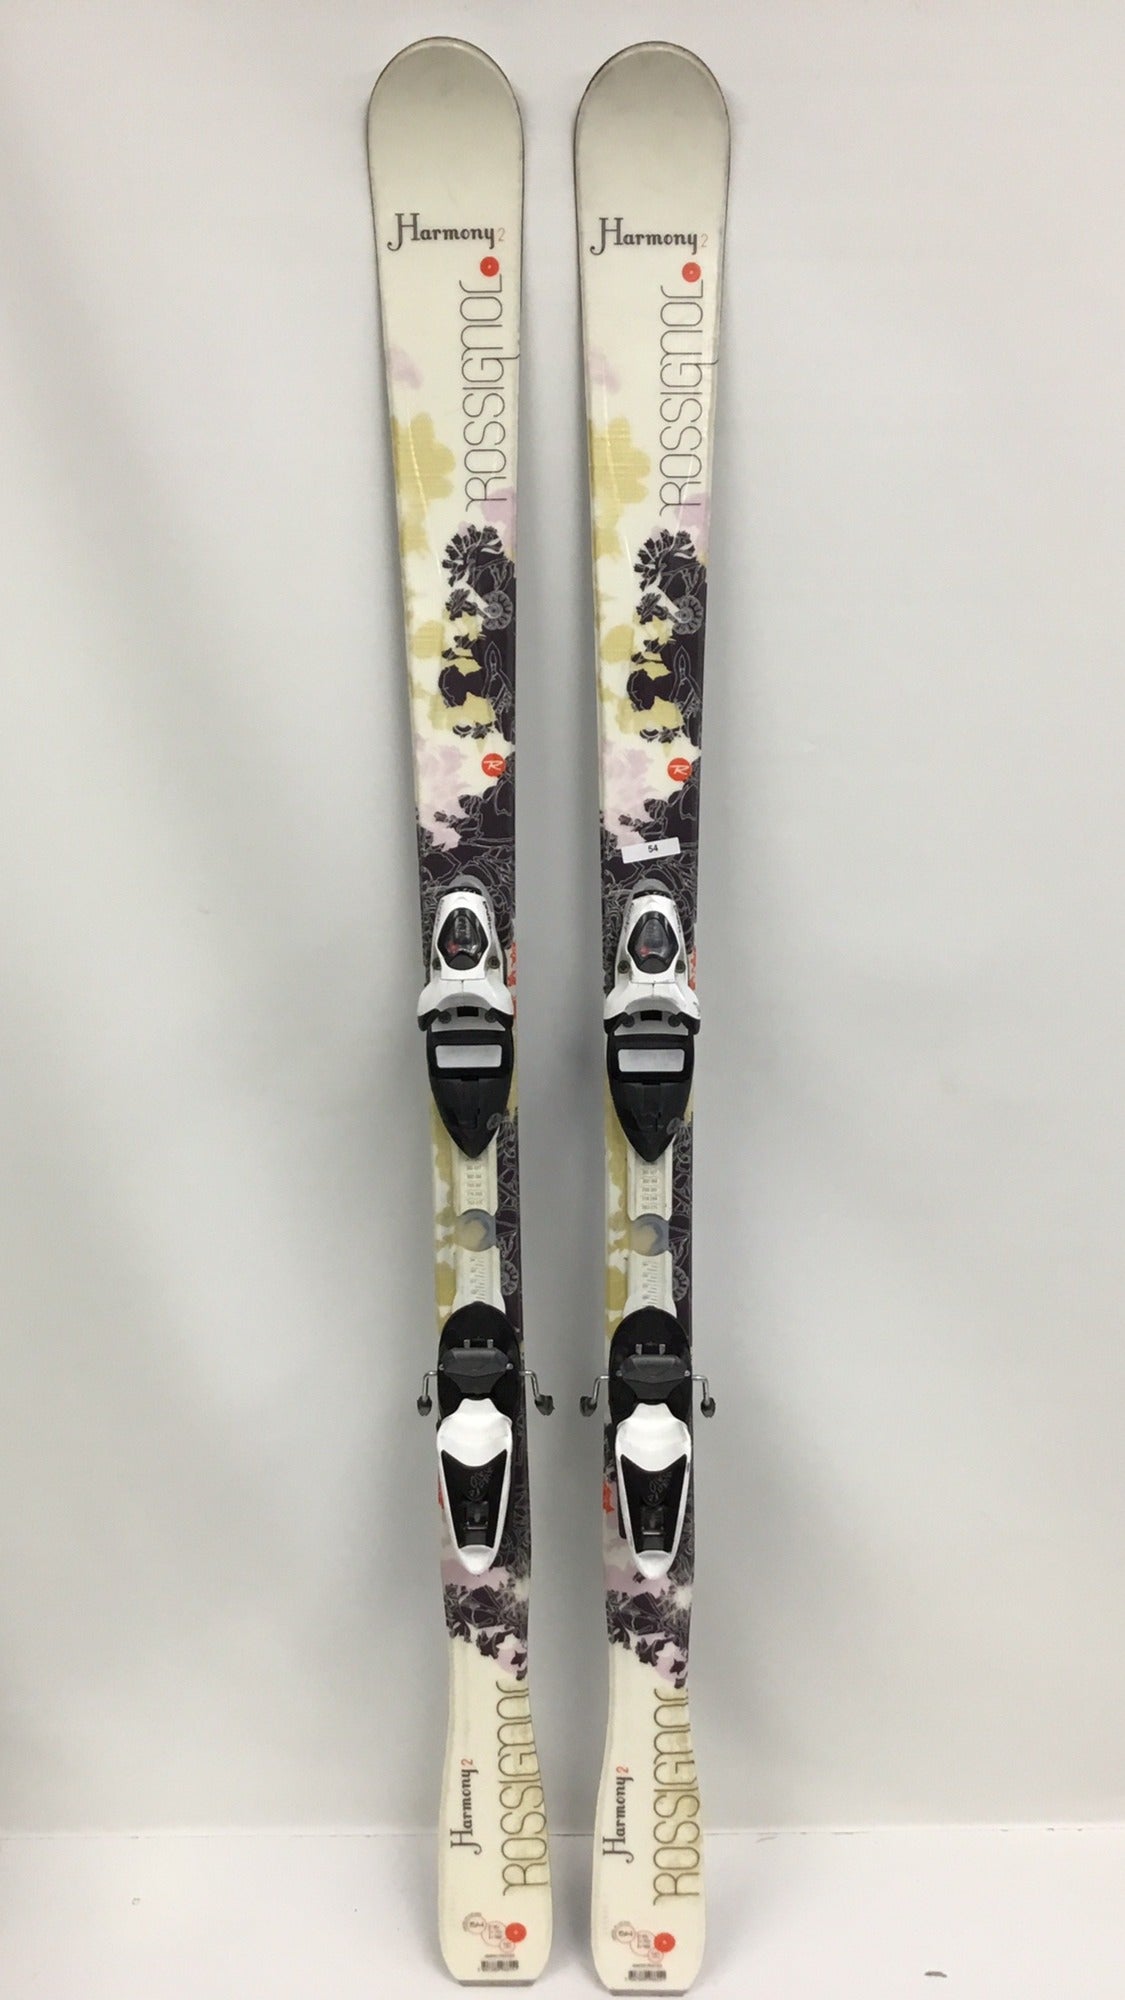 ロシニョール 146cm Harmony2 ROSSIGNOL スキー板 140 最安値級価格